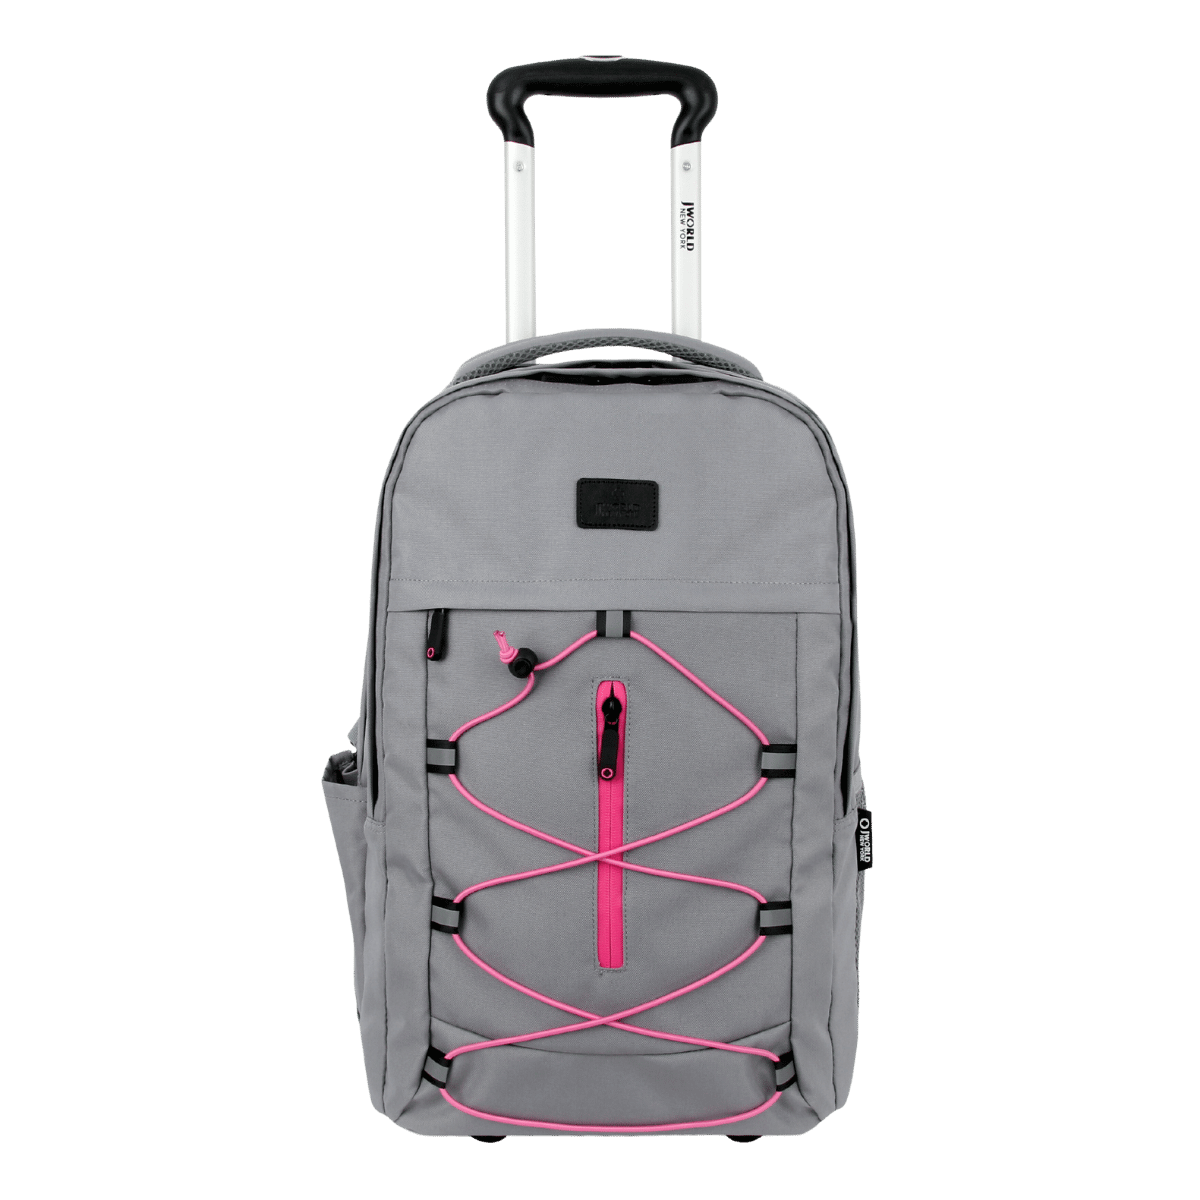 Lash Laptop Rolling Backpack (19 Inch) - JWorldstore